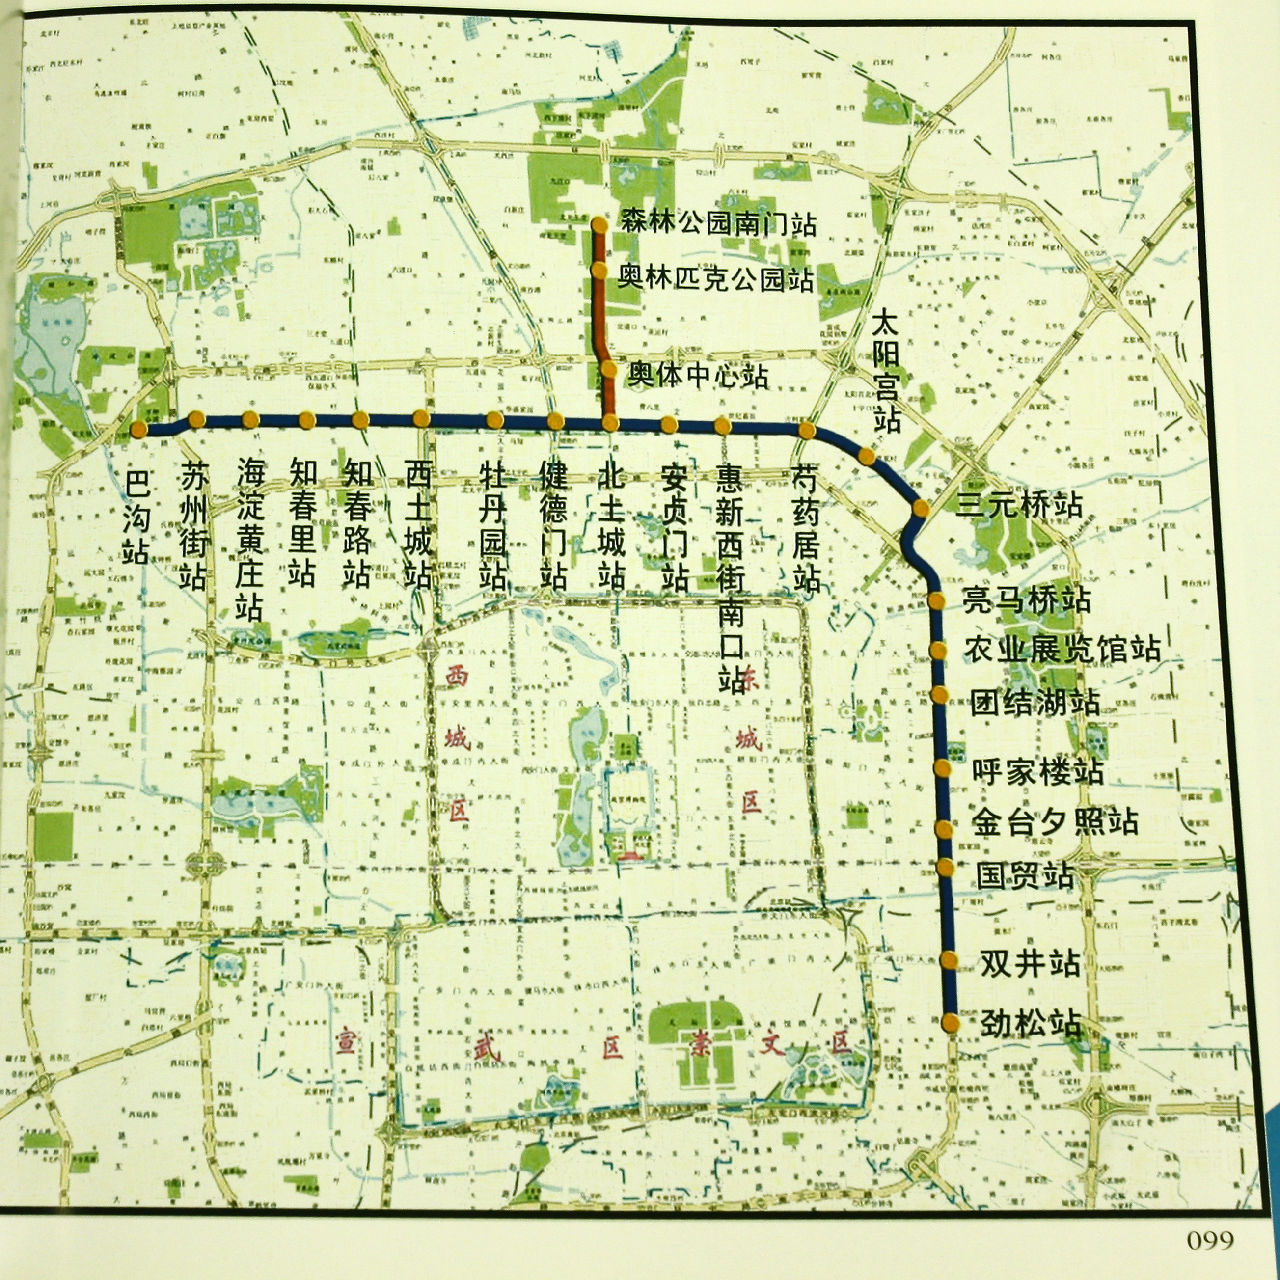 北京捷運10號線一期線路圖